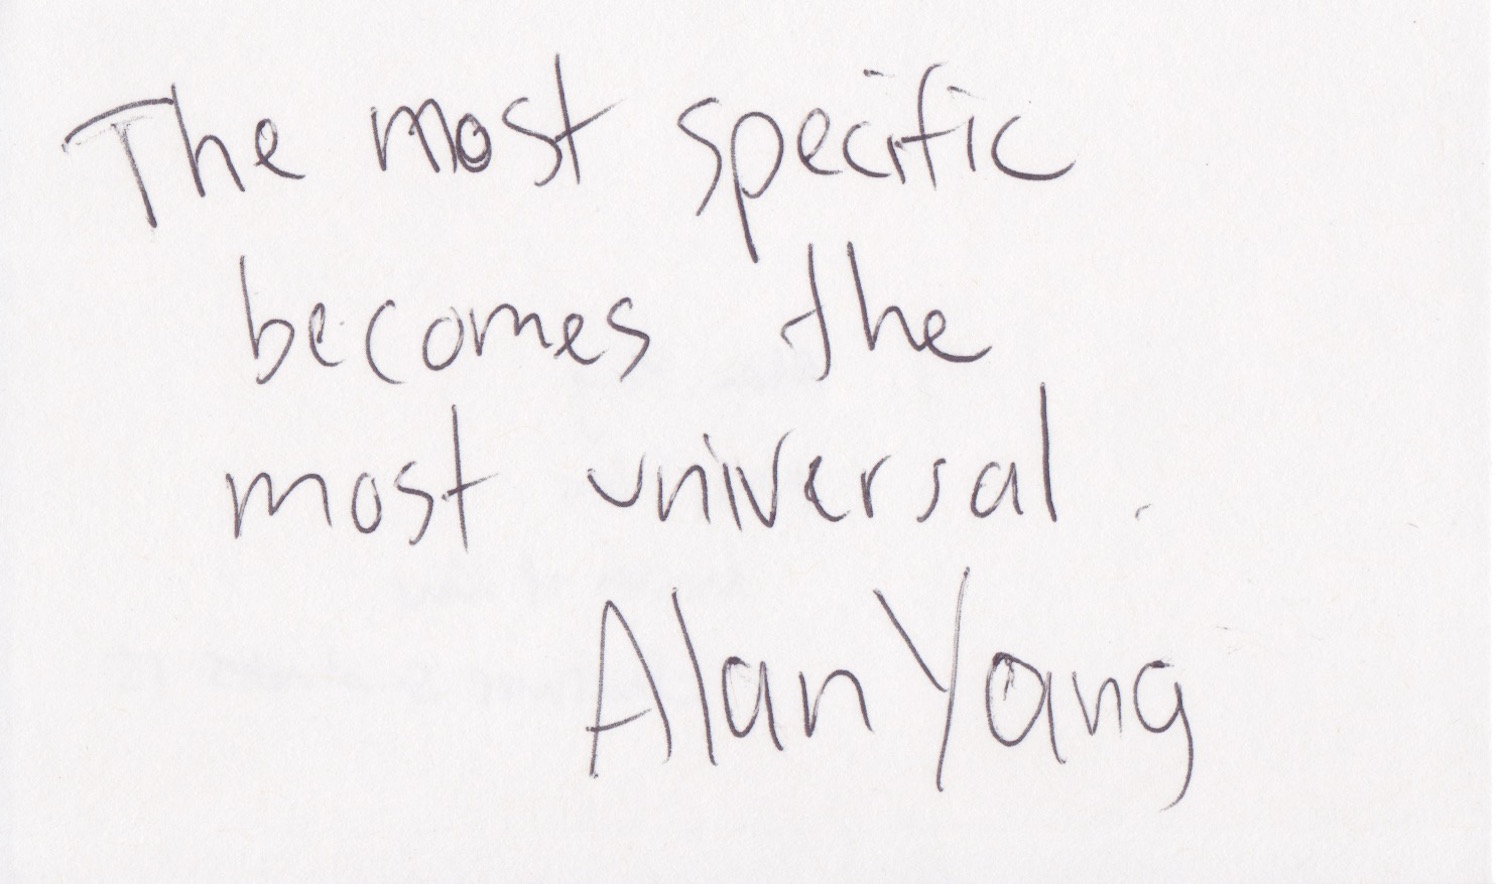 Alan Yang